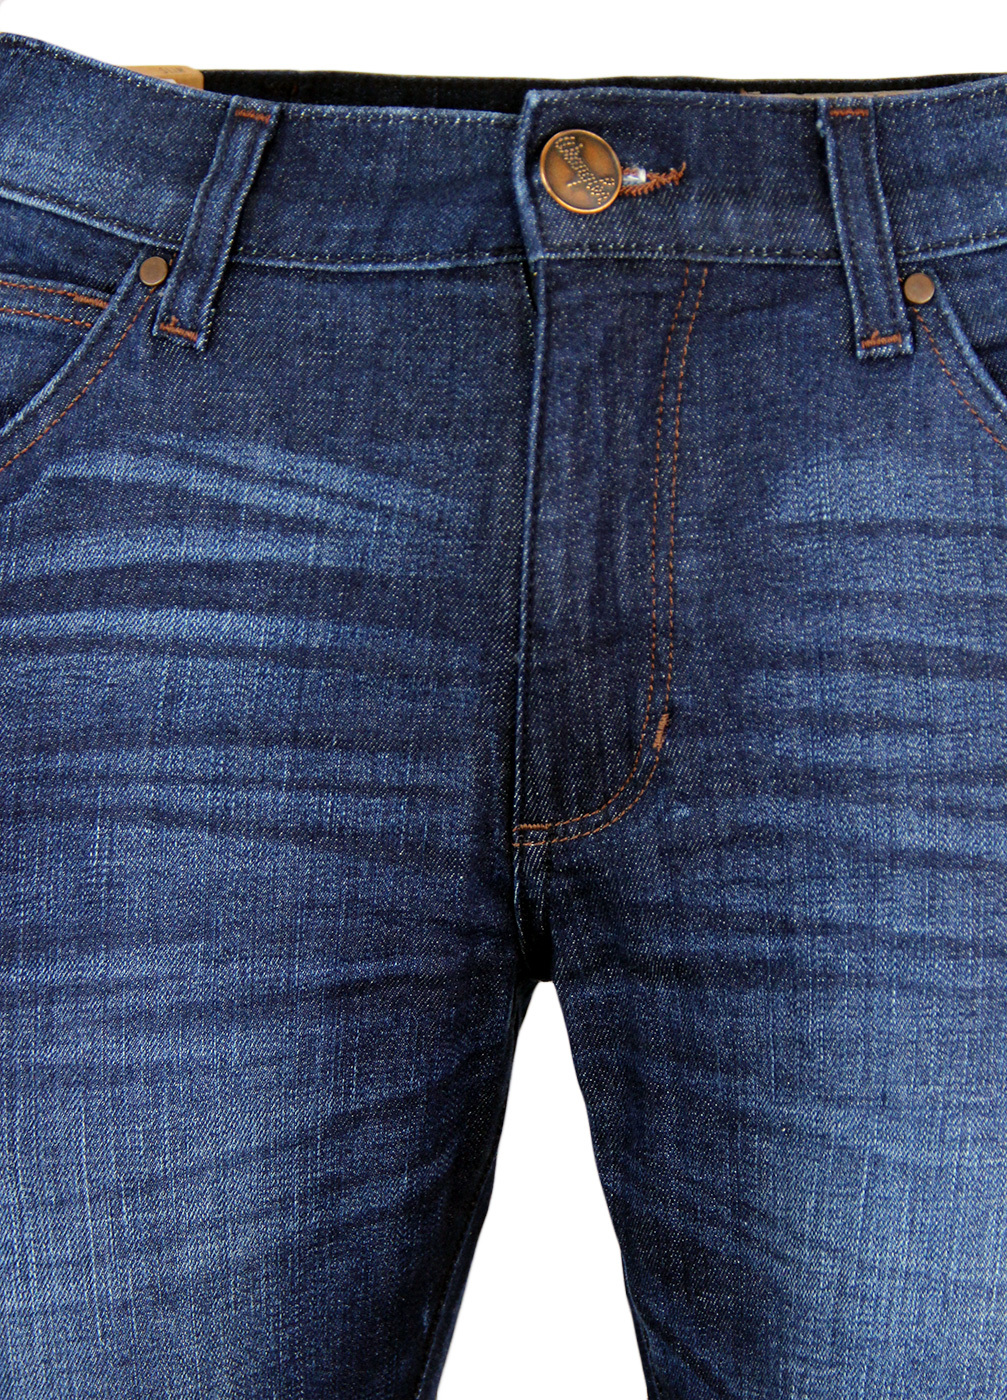 WRANGLER Bryson Retro Mod Skinny Denim Jeans in Fast & Royal